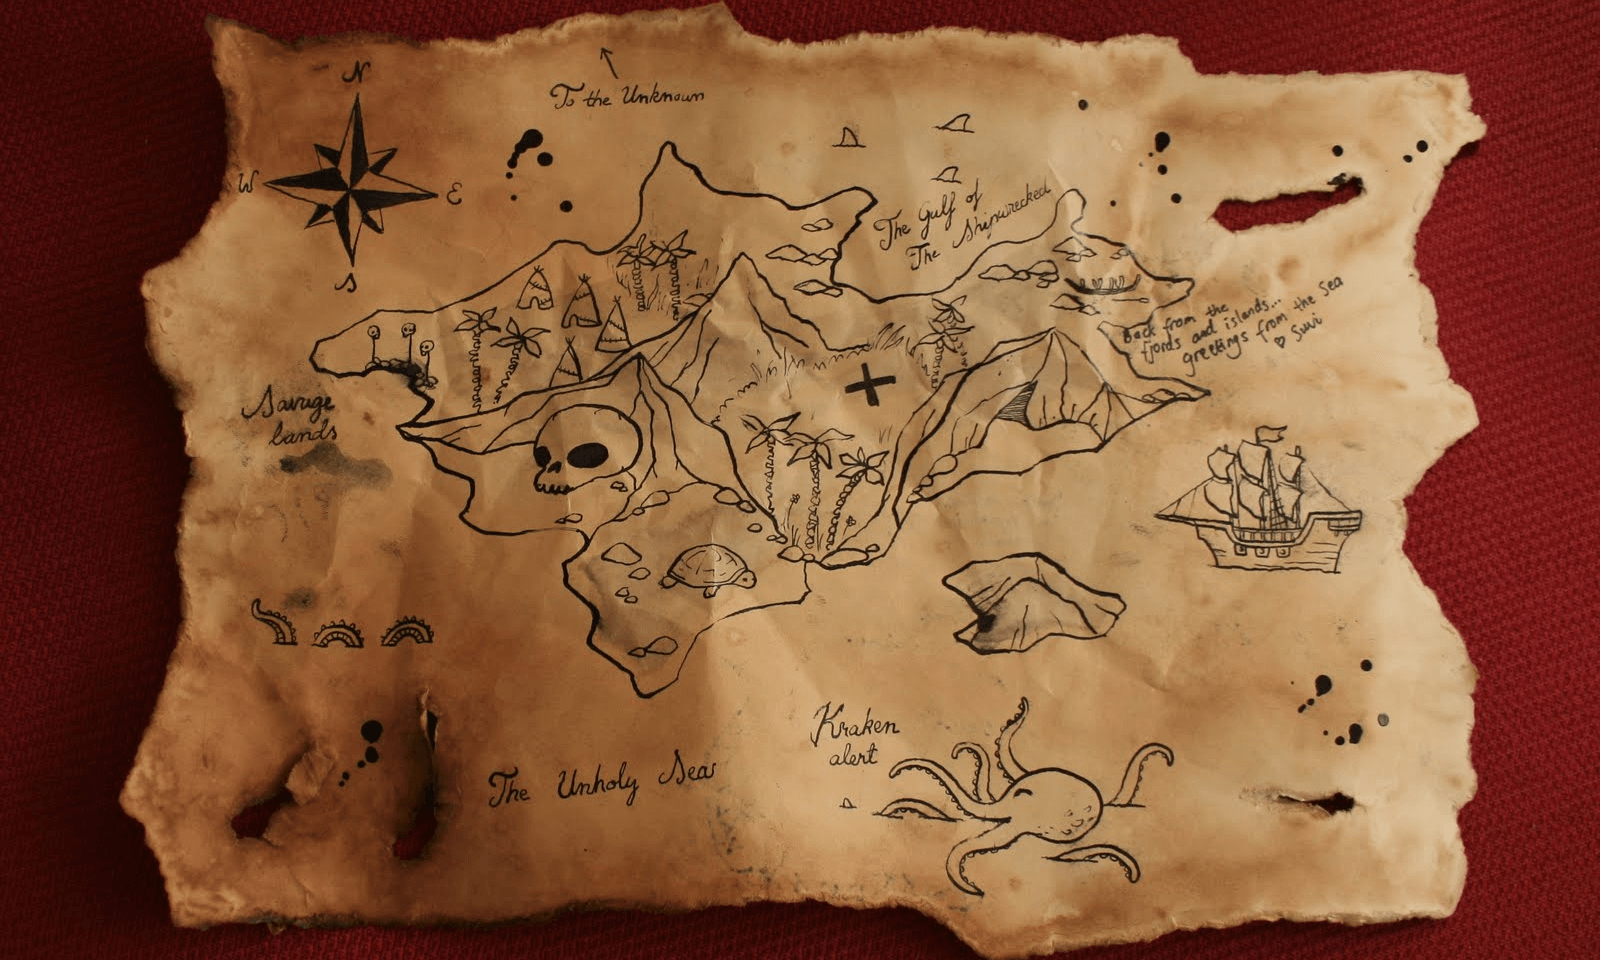 карта остров сокровищ